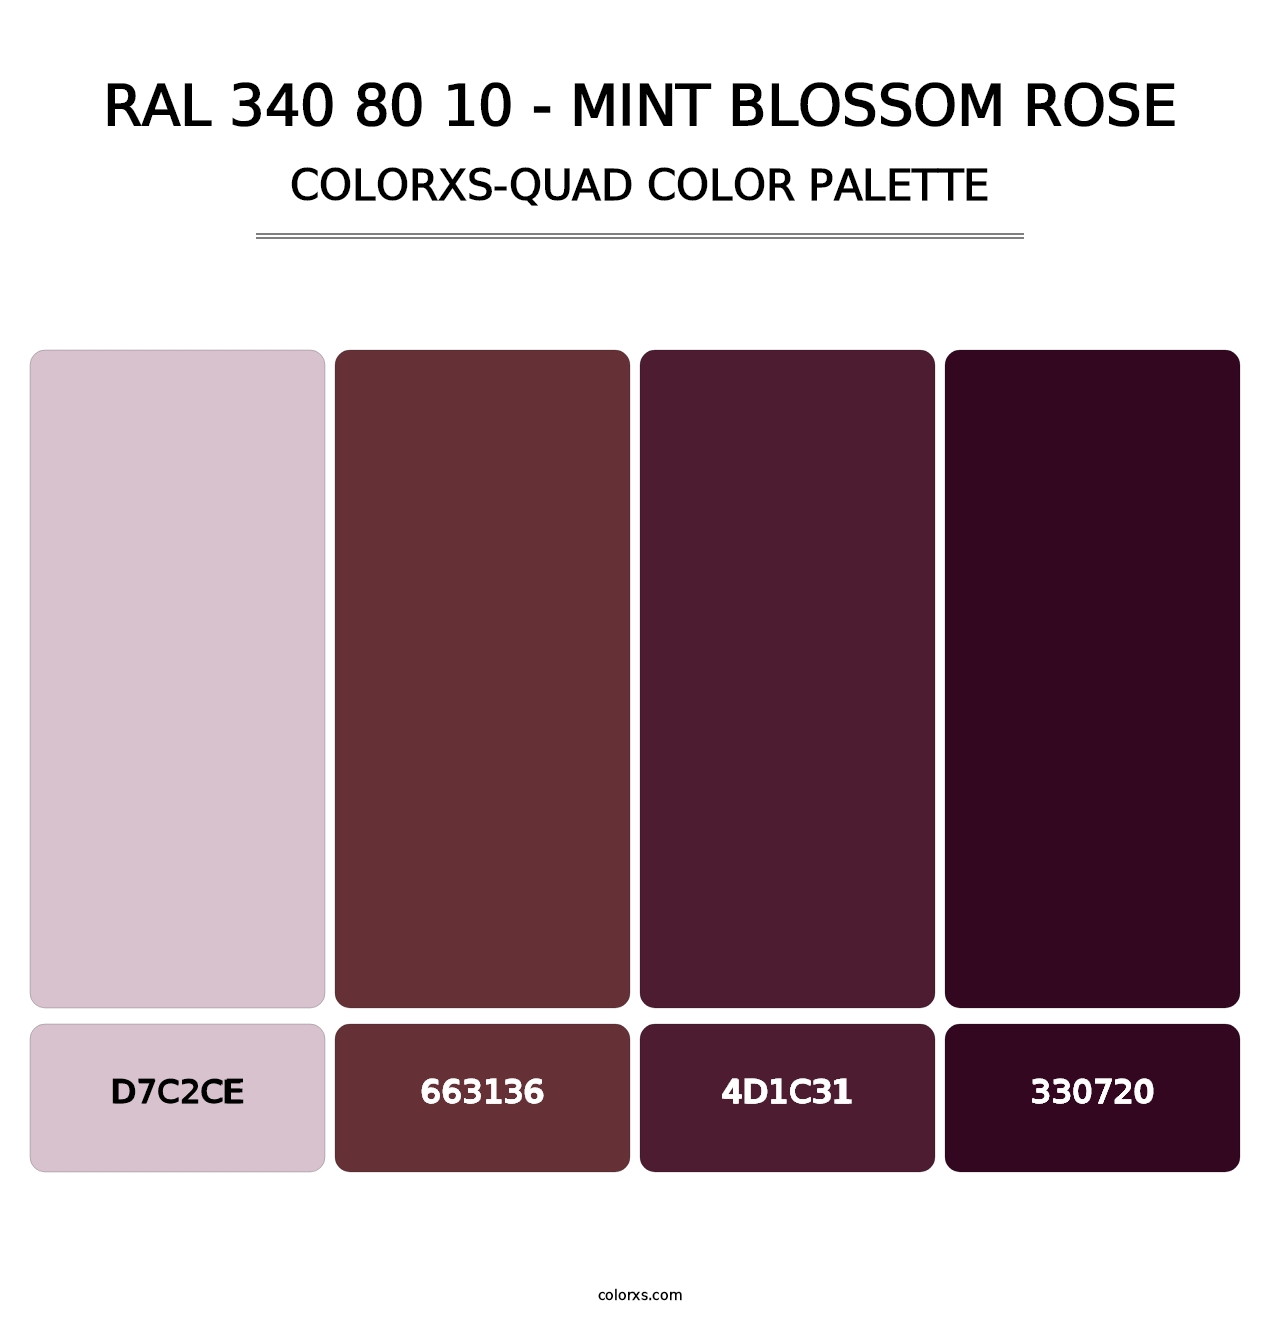 RAL 340 80 10 - Mint Blossom Rose - Colorxs Quad Palette